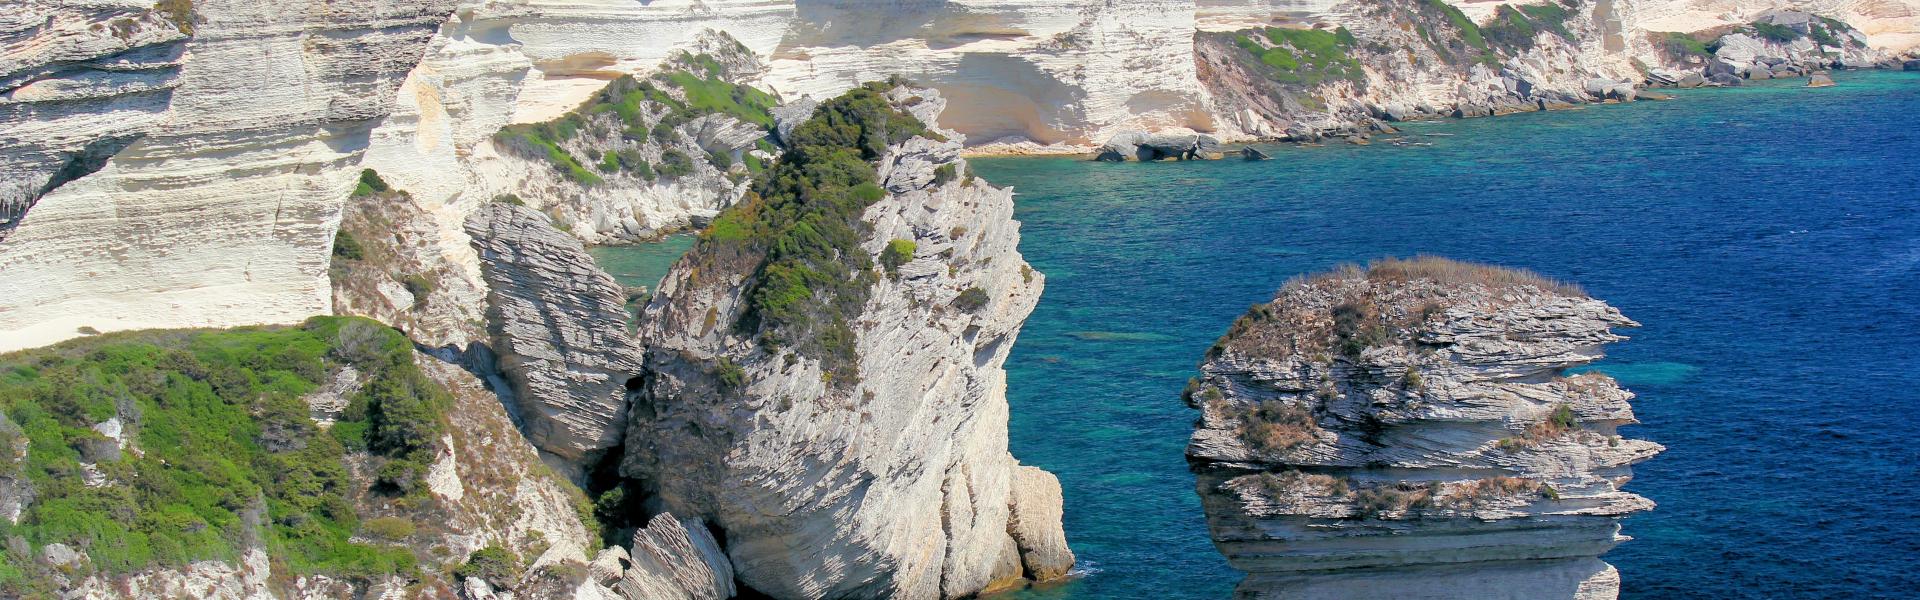 Location de vacances à Linguizzetta - Haute-Corse - amivac